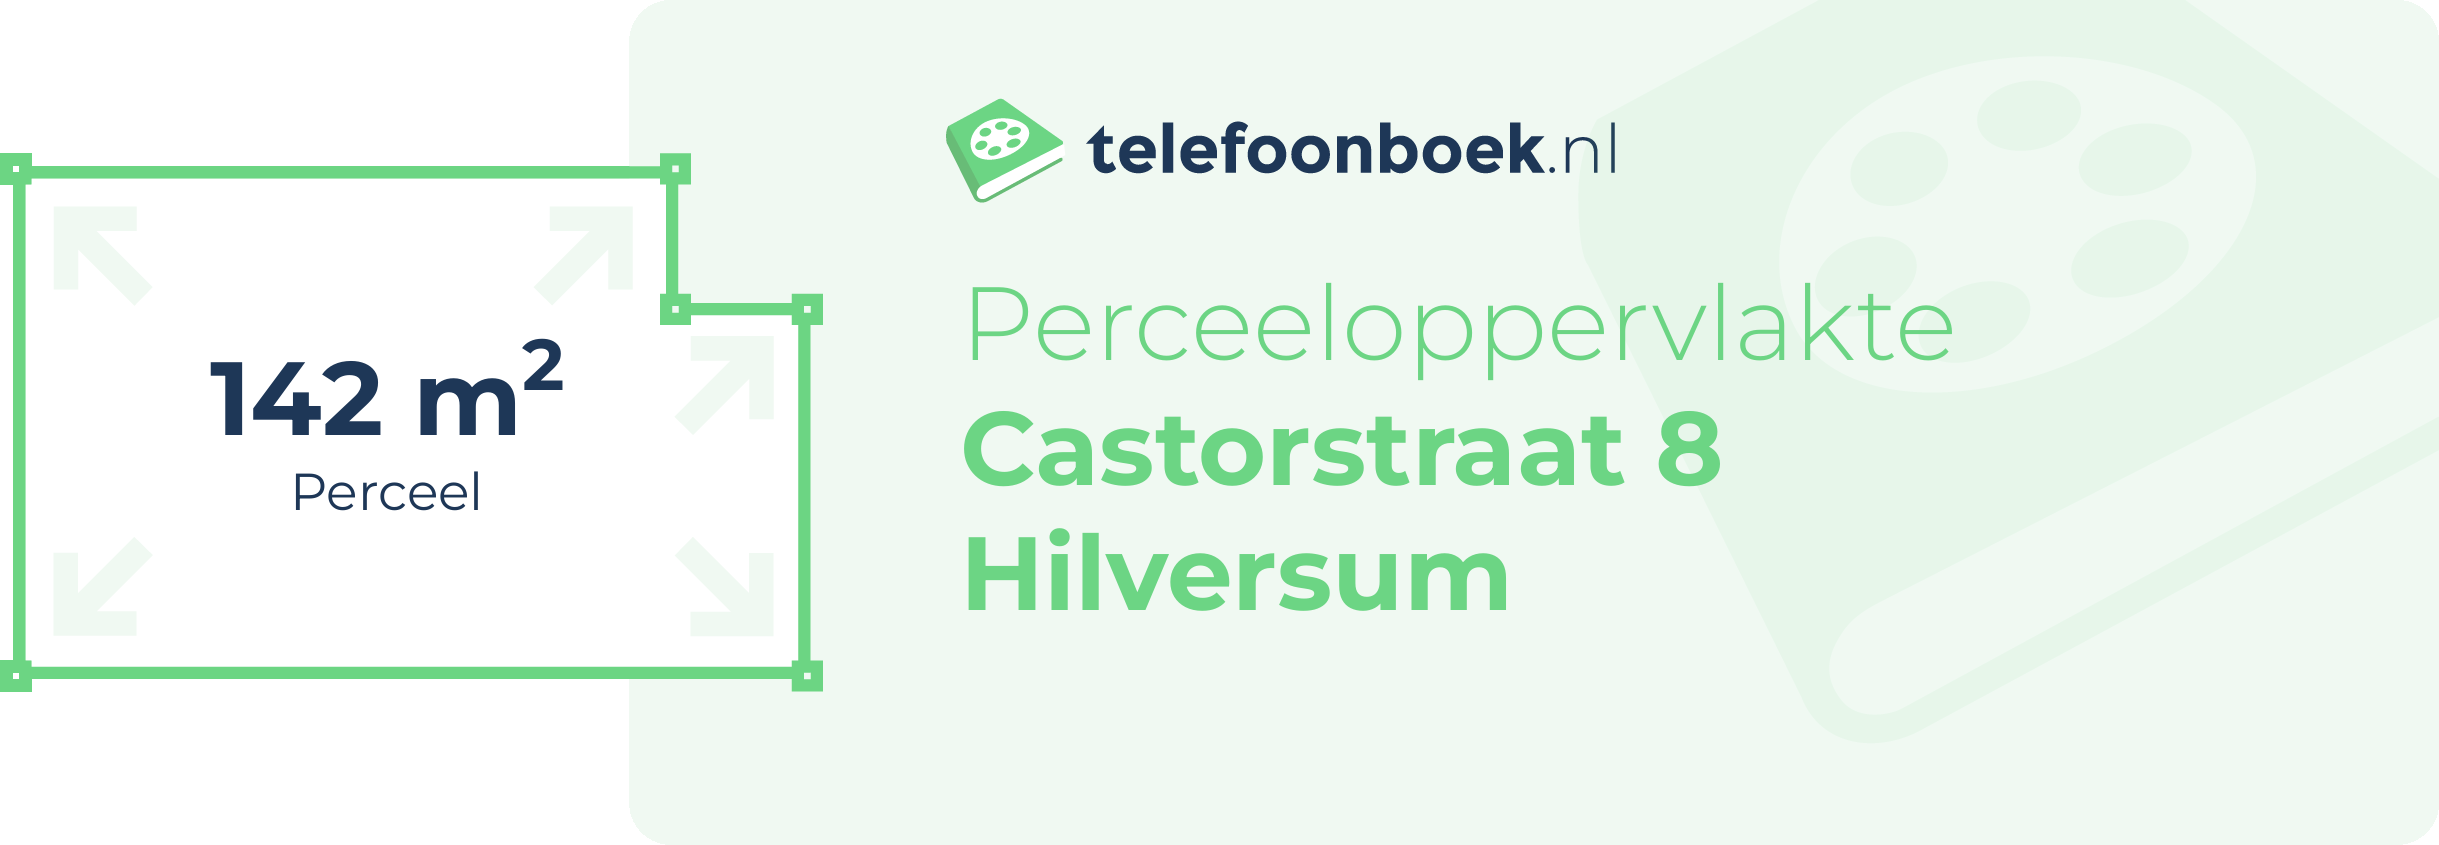 Perceeloppervlakte Castorstraat 8 Hilversum